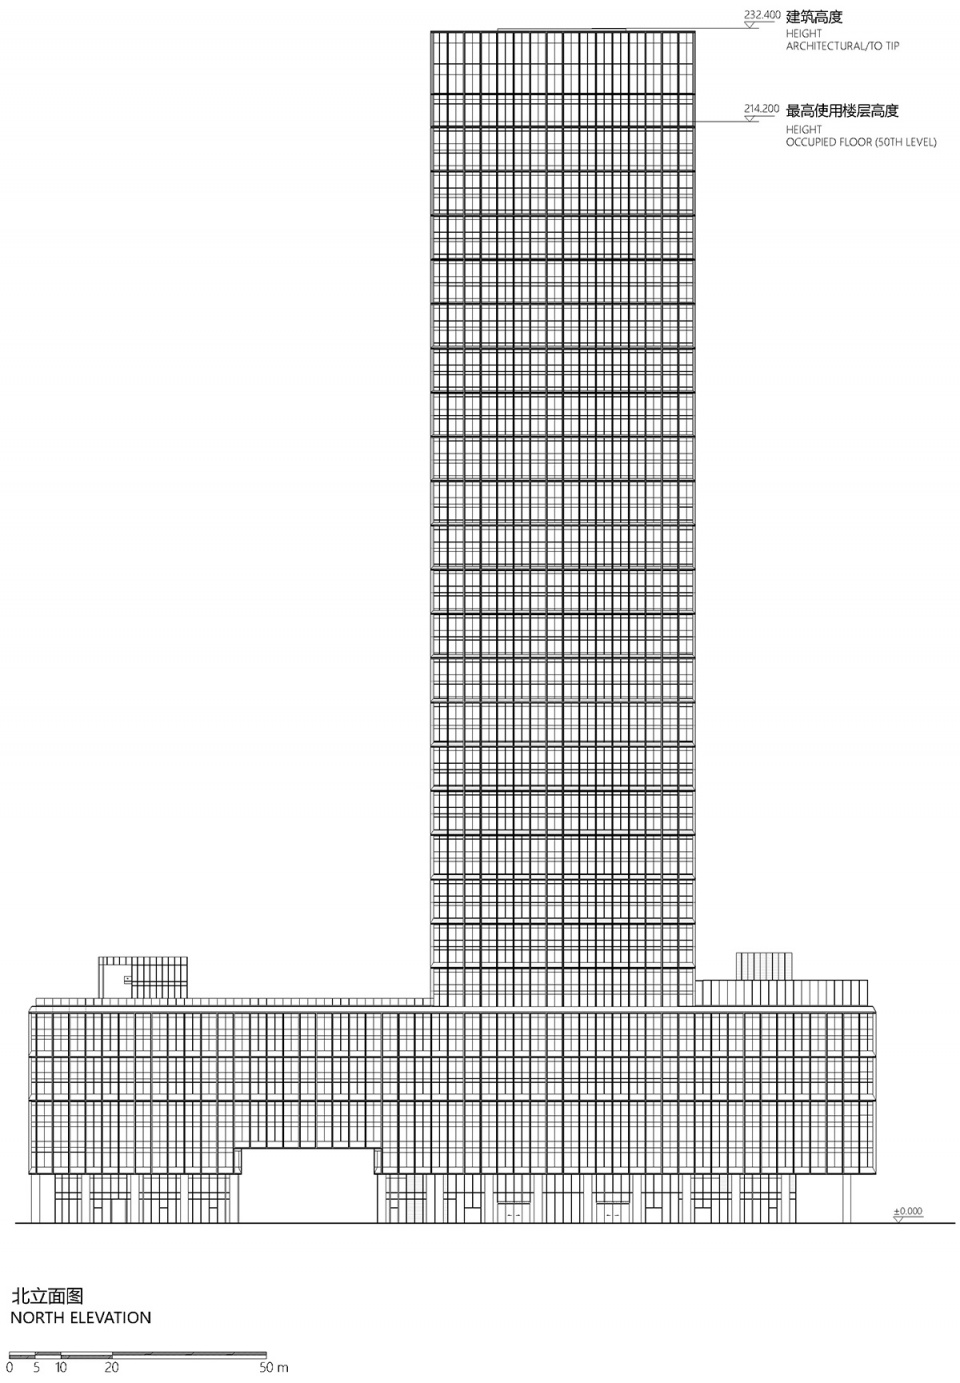 深圳广电金融中心大厦/以当代视角和手法创造符合岭南生活方式的超高层办公环境-67